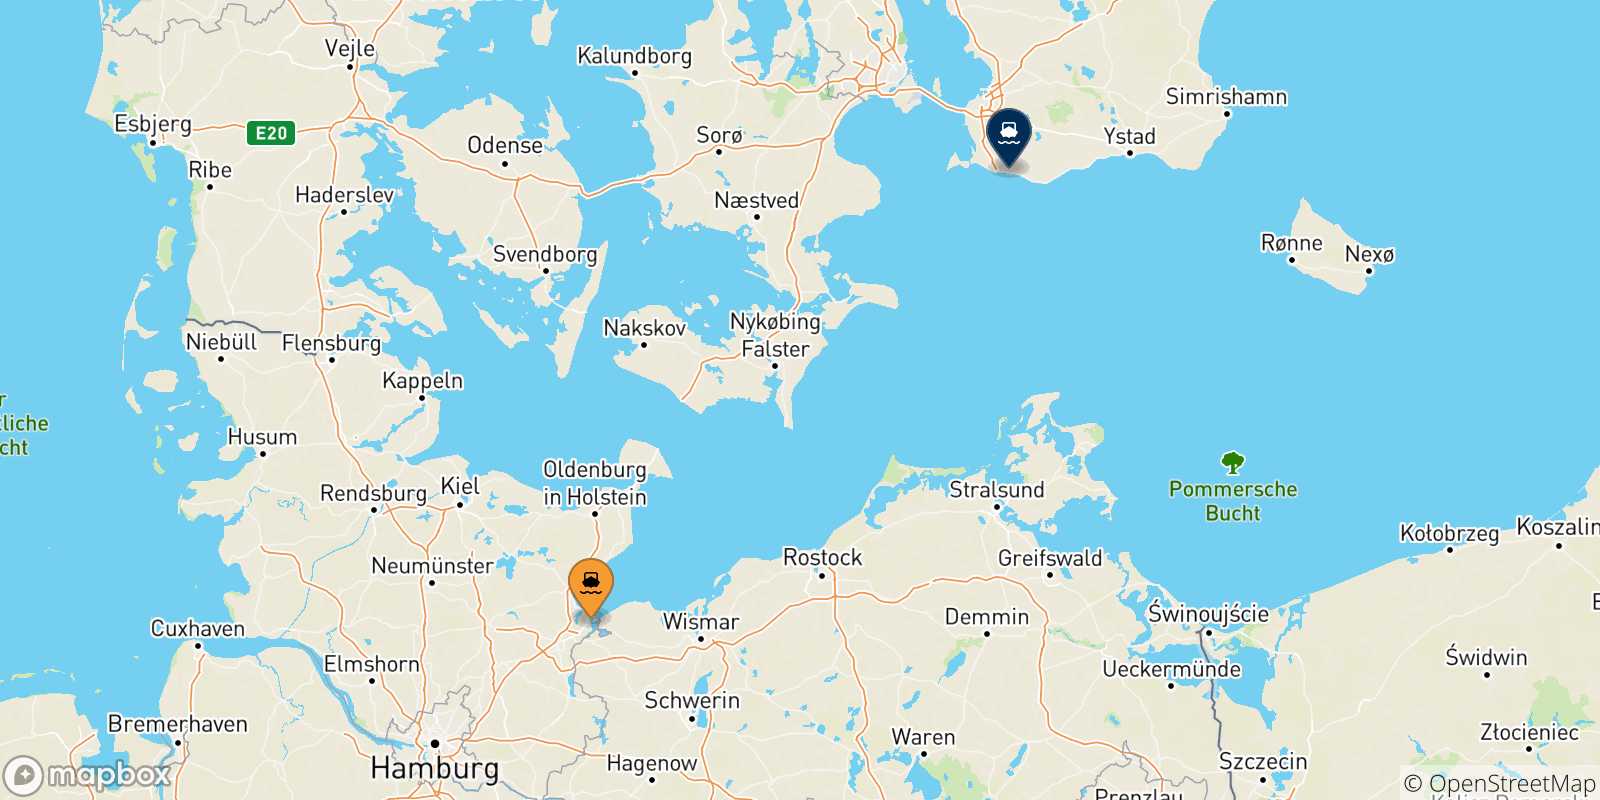 Mappa delle possibili rotte tra Travemünde e la Svezia